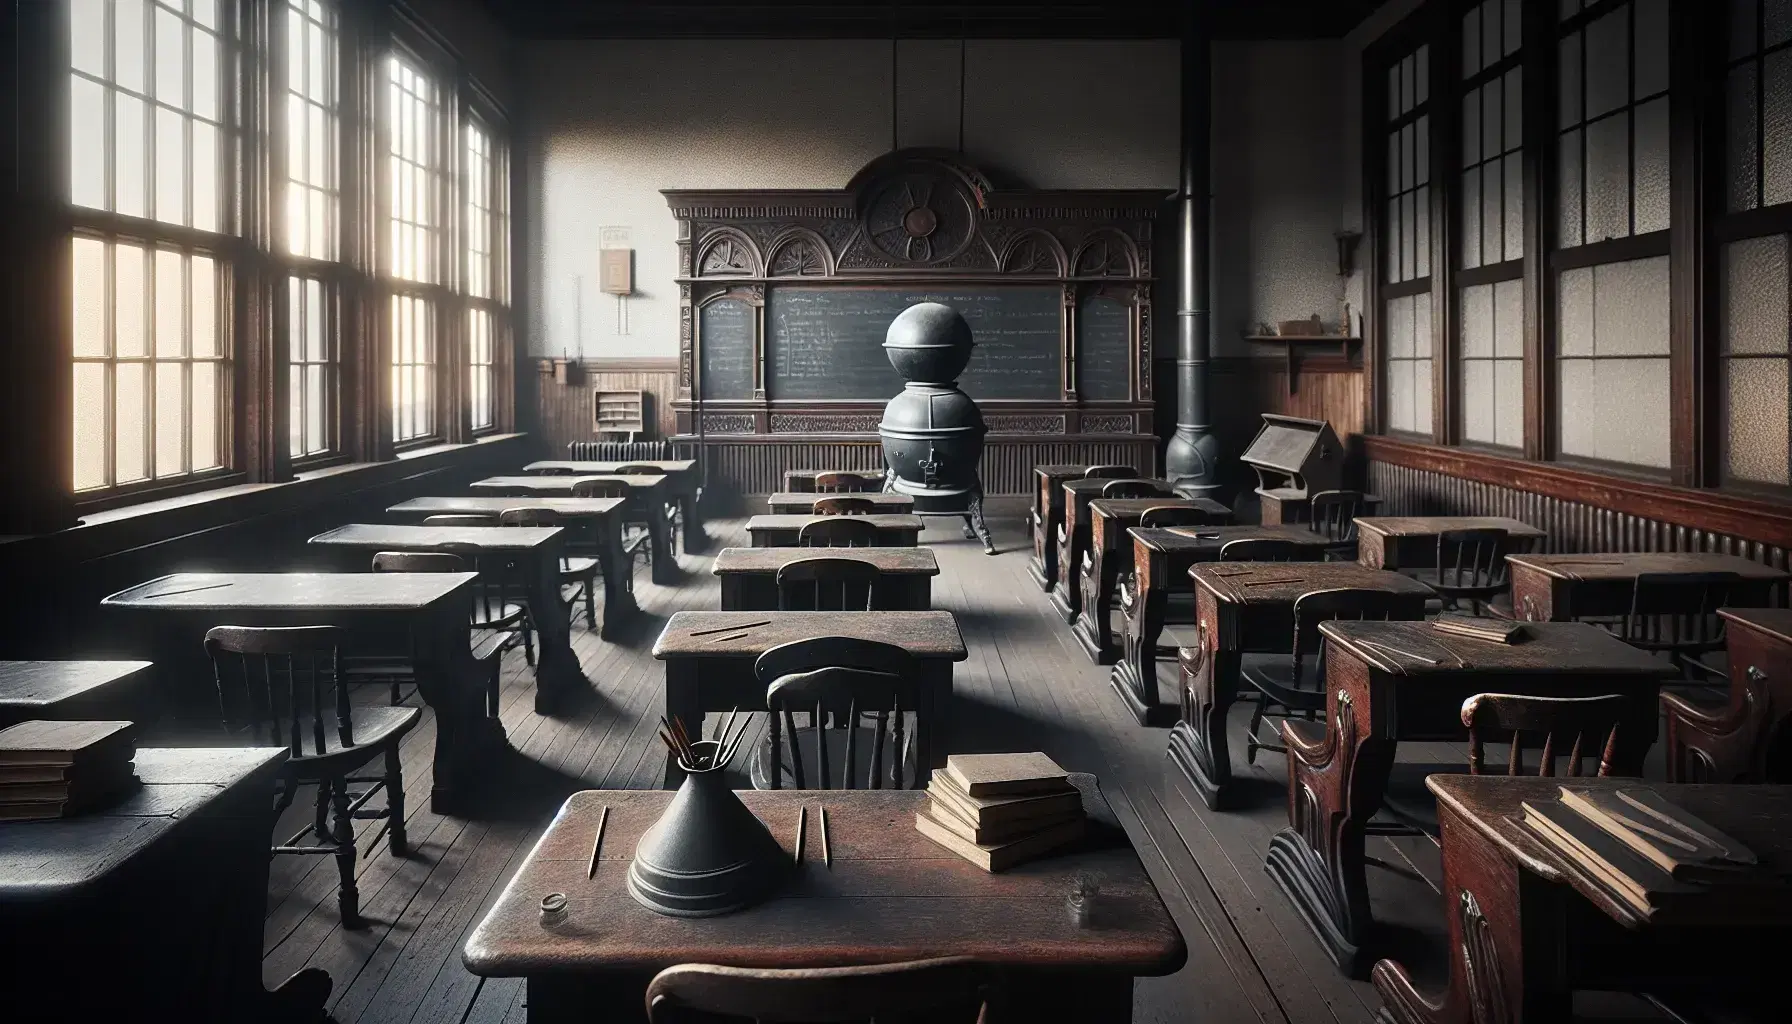 Aula antigua con pupitres de madera, pizarra grande sin escribir, estufa de hierro y globo terráqueo sobre un escritorio de profesor.